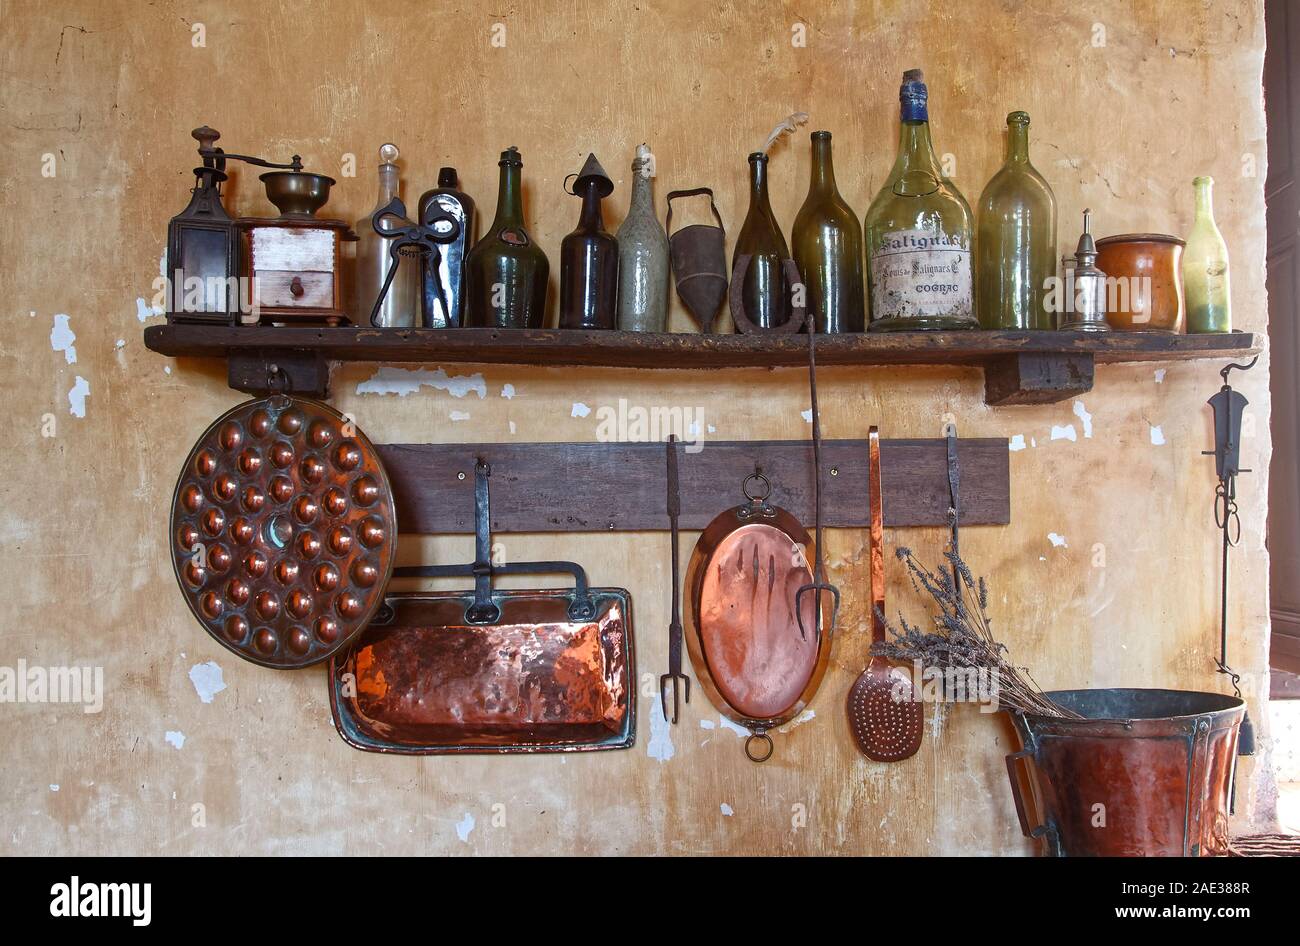 Küche, Flaschen und Geräte, alten Holz Regal, Kupfer Pfannen hängen, an der Wand die Farbe blätterte ab, Zimmer, Chateau Courmatin; Schloss aus dem 17. Jahrhundert; Burgund; Taiz Stockfoto